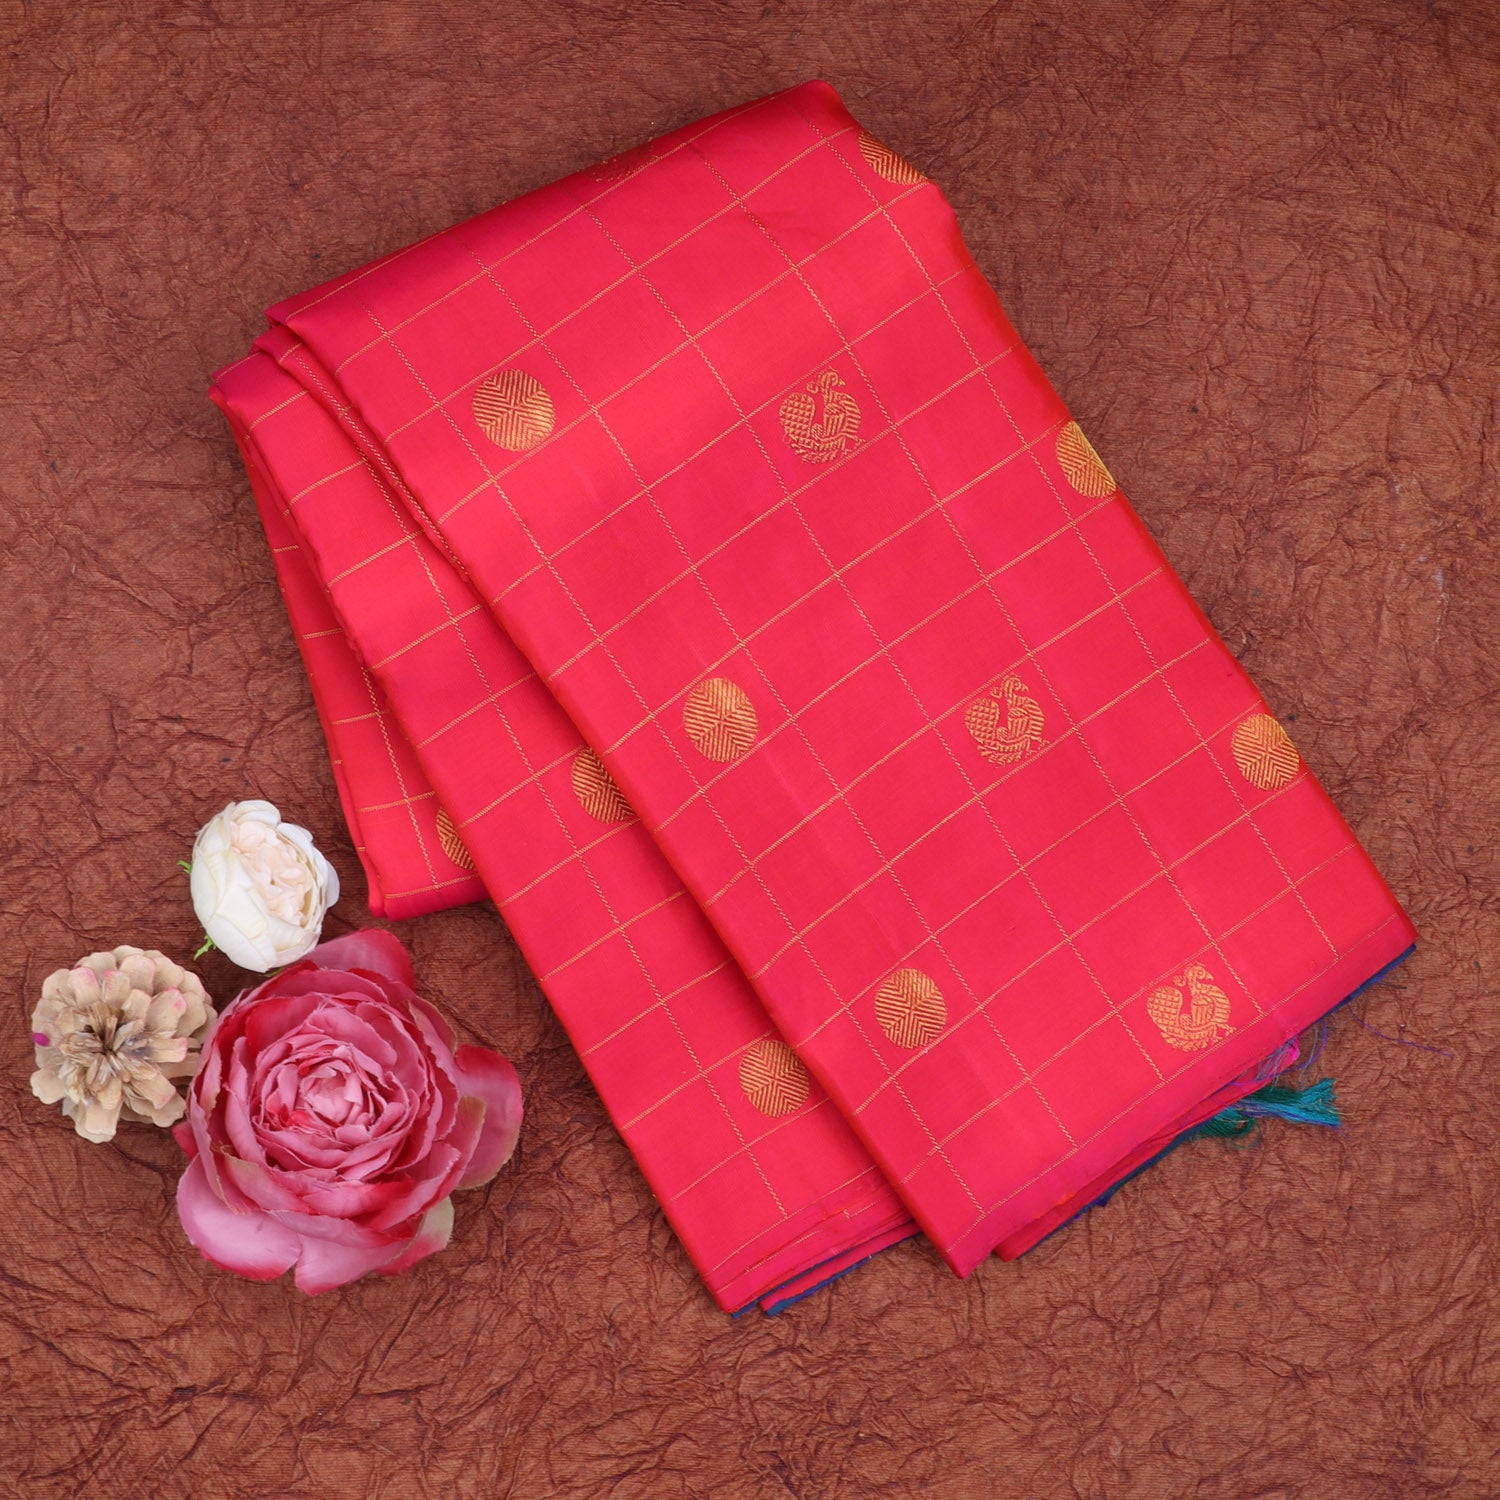 Bright Pink Kanjivaram Silk Saree With Floral And Bird Motifs